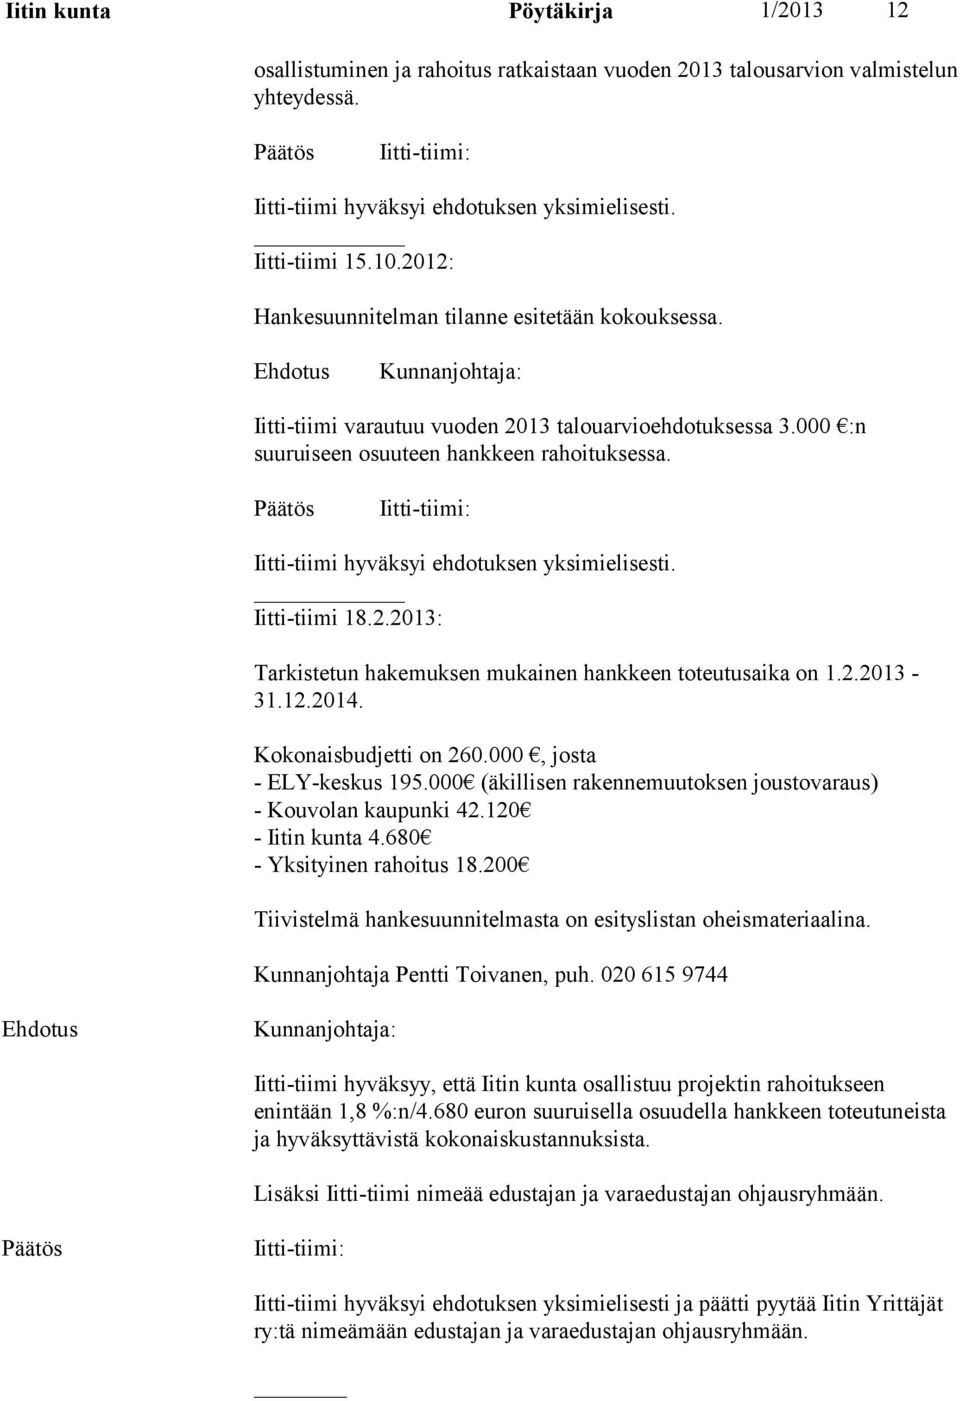 Iitti-tiimi hyväksyi ehdotuksen yksimielisesti. Iitti-tiimi 18.2.2013: Tarkistetun hakemuksen mukainen hankkeen toteutusaika on 1.2.2013-31.12.2014. Kokonaisbudjetti on 260.